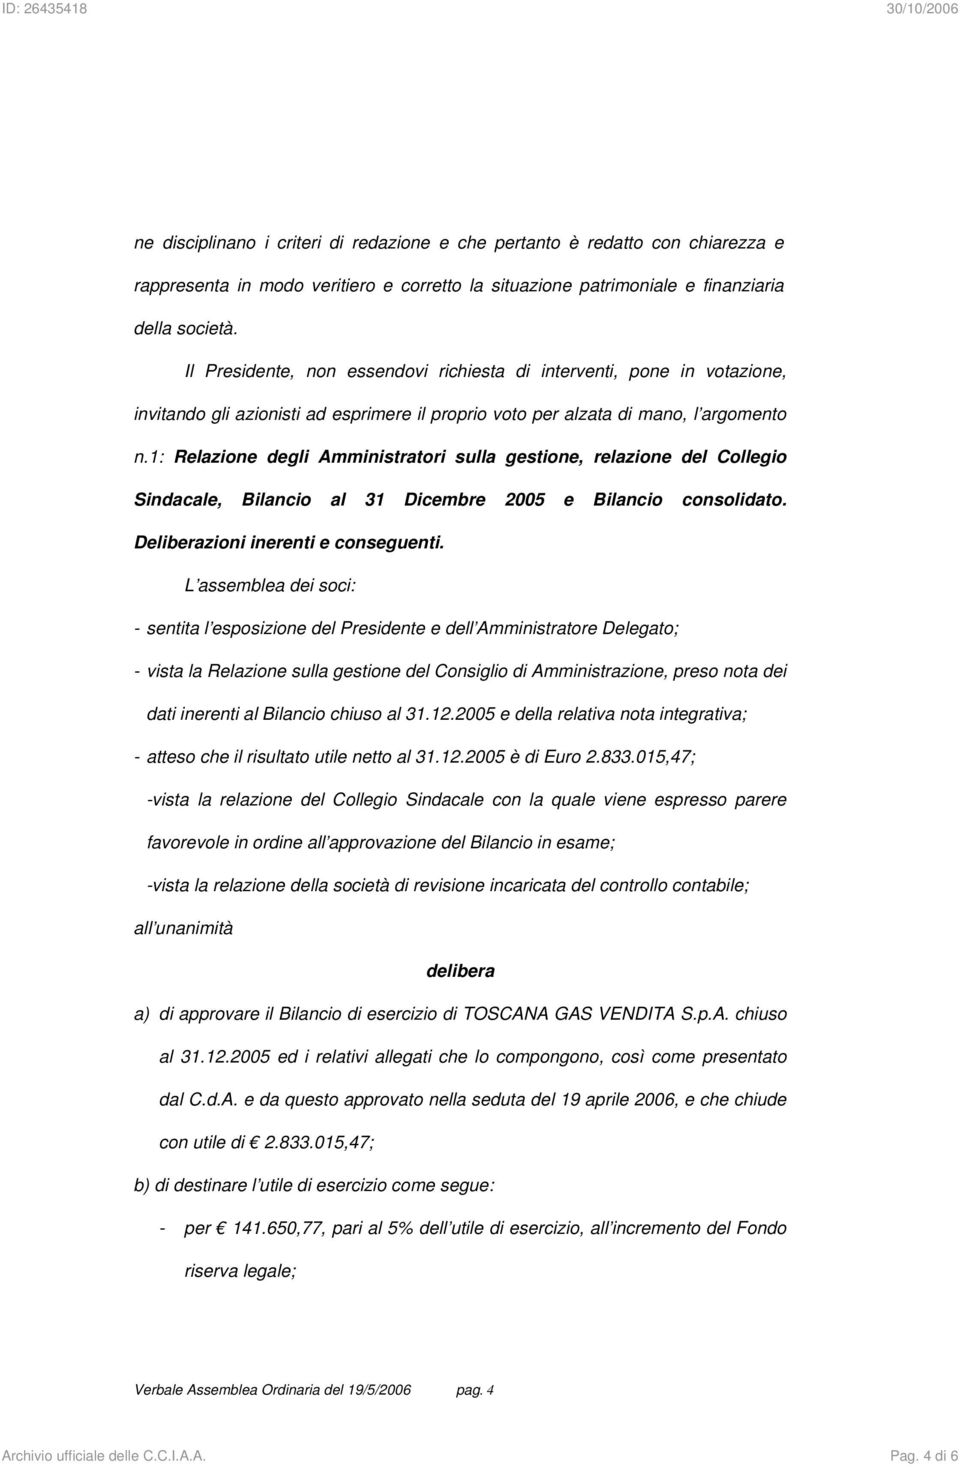 1: Relazione degli Amministratori sulla gestione, relazione del Collegio Sindacale, Bilancio al 31 Dicembre 2005 e Bilancio consolidato. Deliberazioni inerenti e conseguenti.